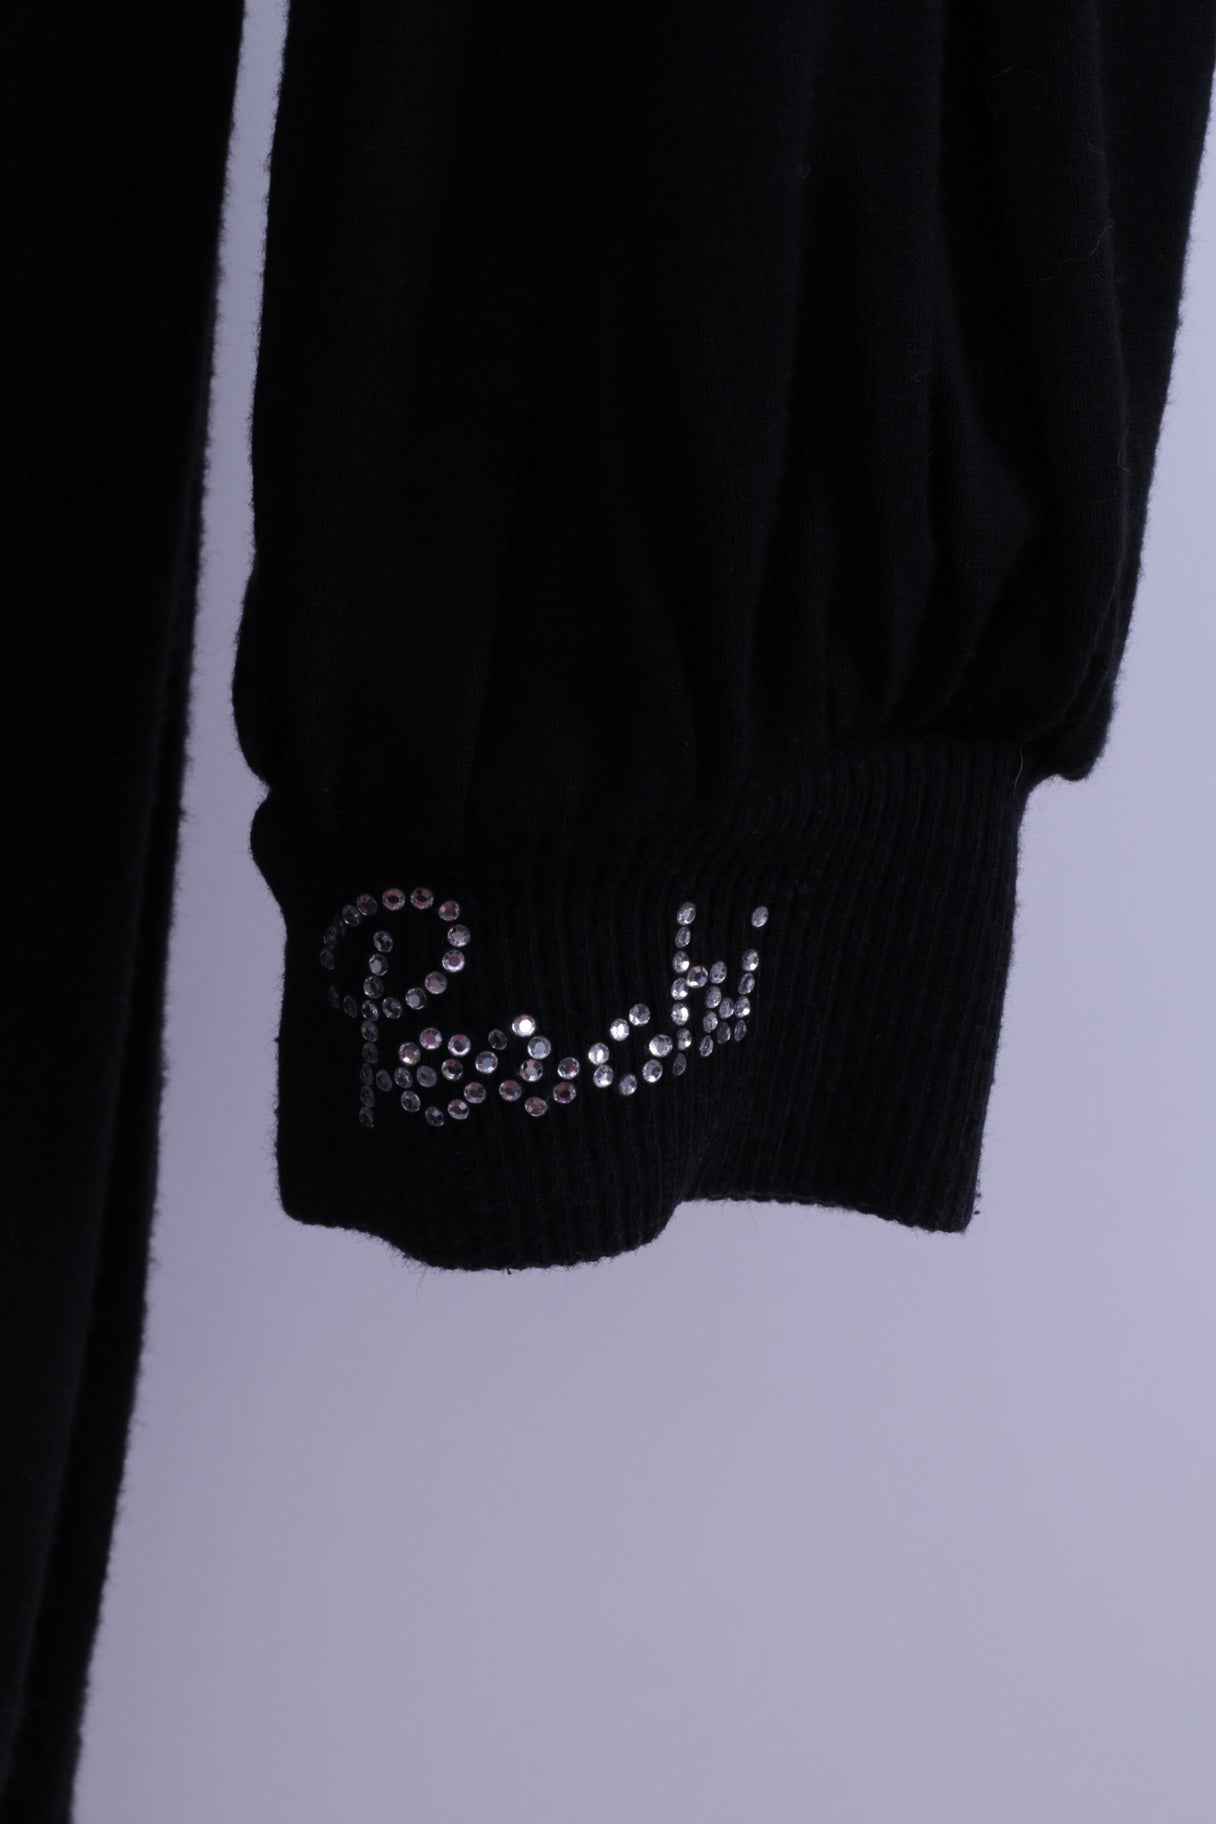 Per Chi Womens 42 S Mini Dress Black Stretch Cotton Crew Neck Fit Tunic